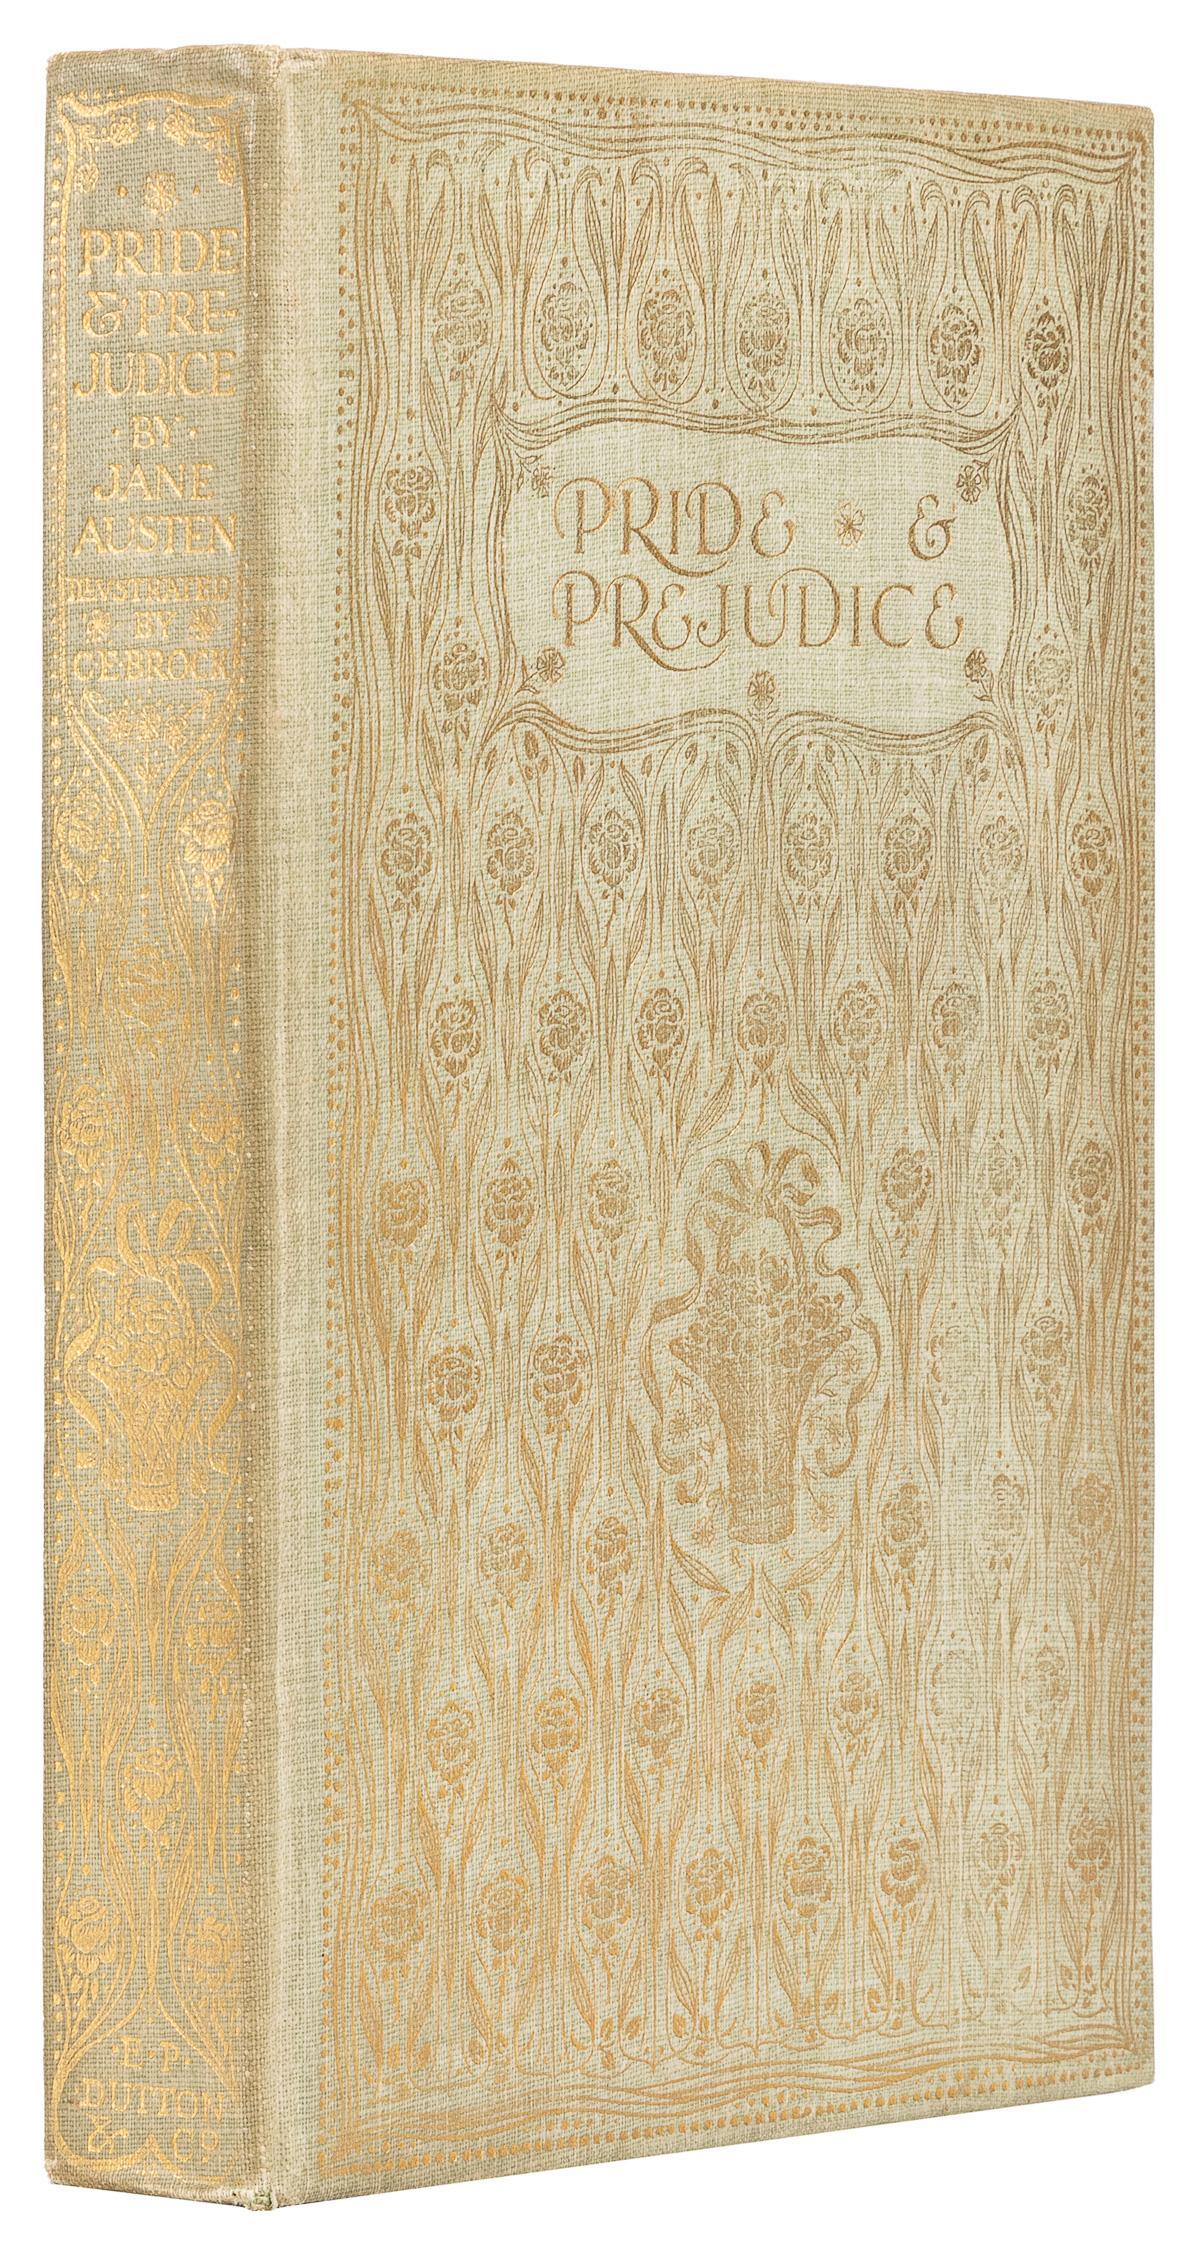 Pride & Prejudice von Jane Austen, illustriert von C. E. Brock, 1907 (Frühes 20. Jahrhundert)